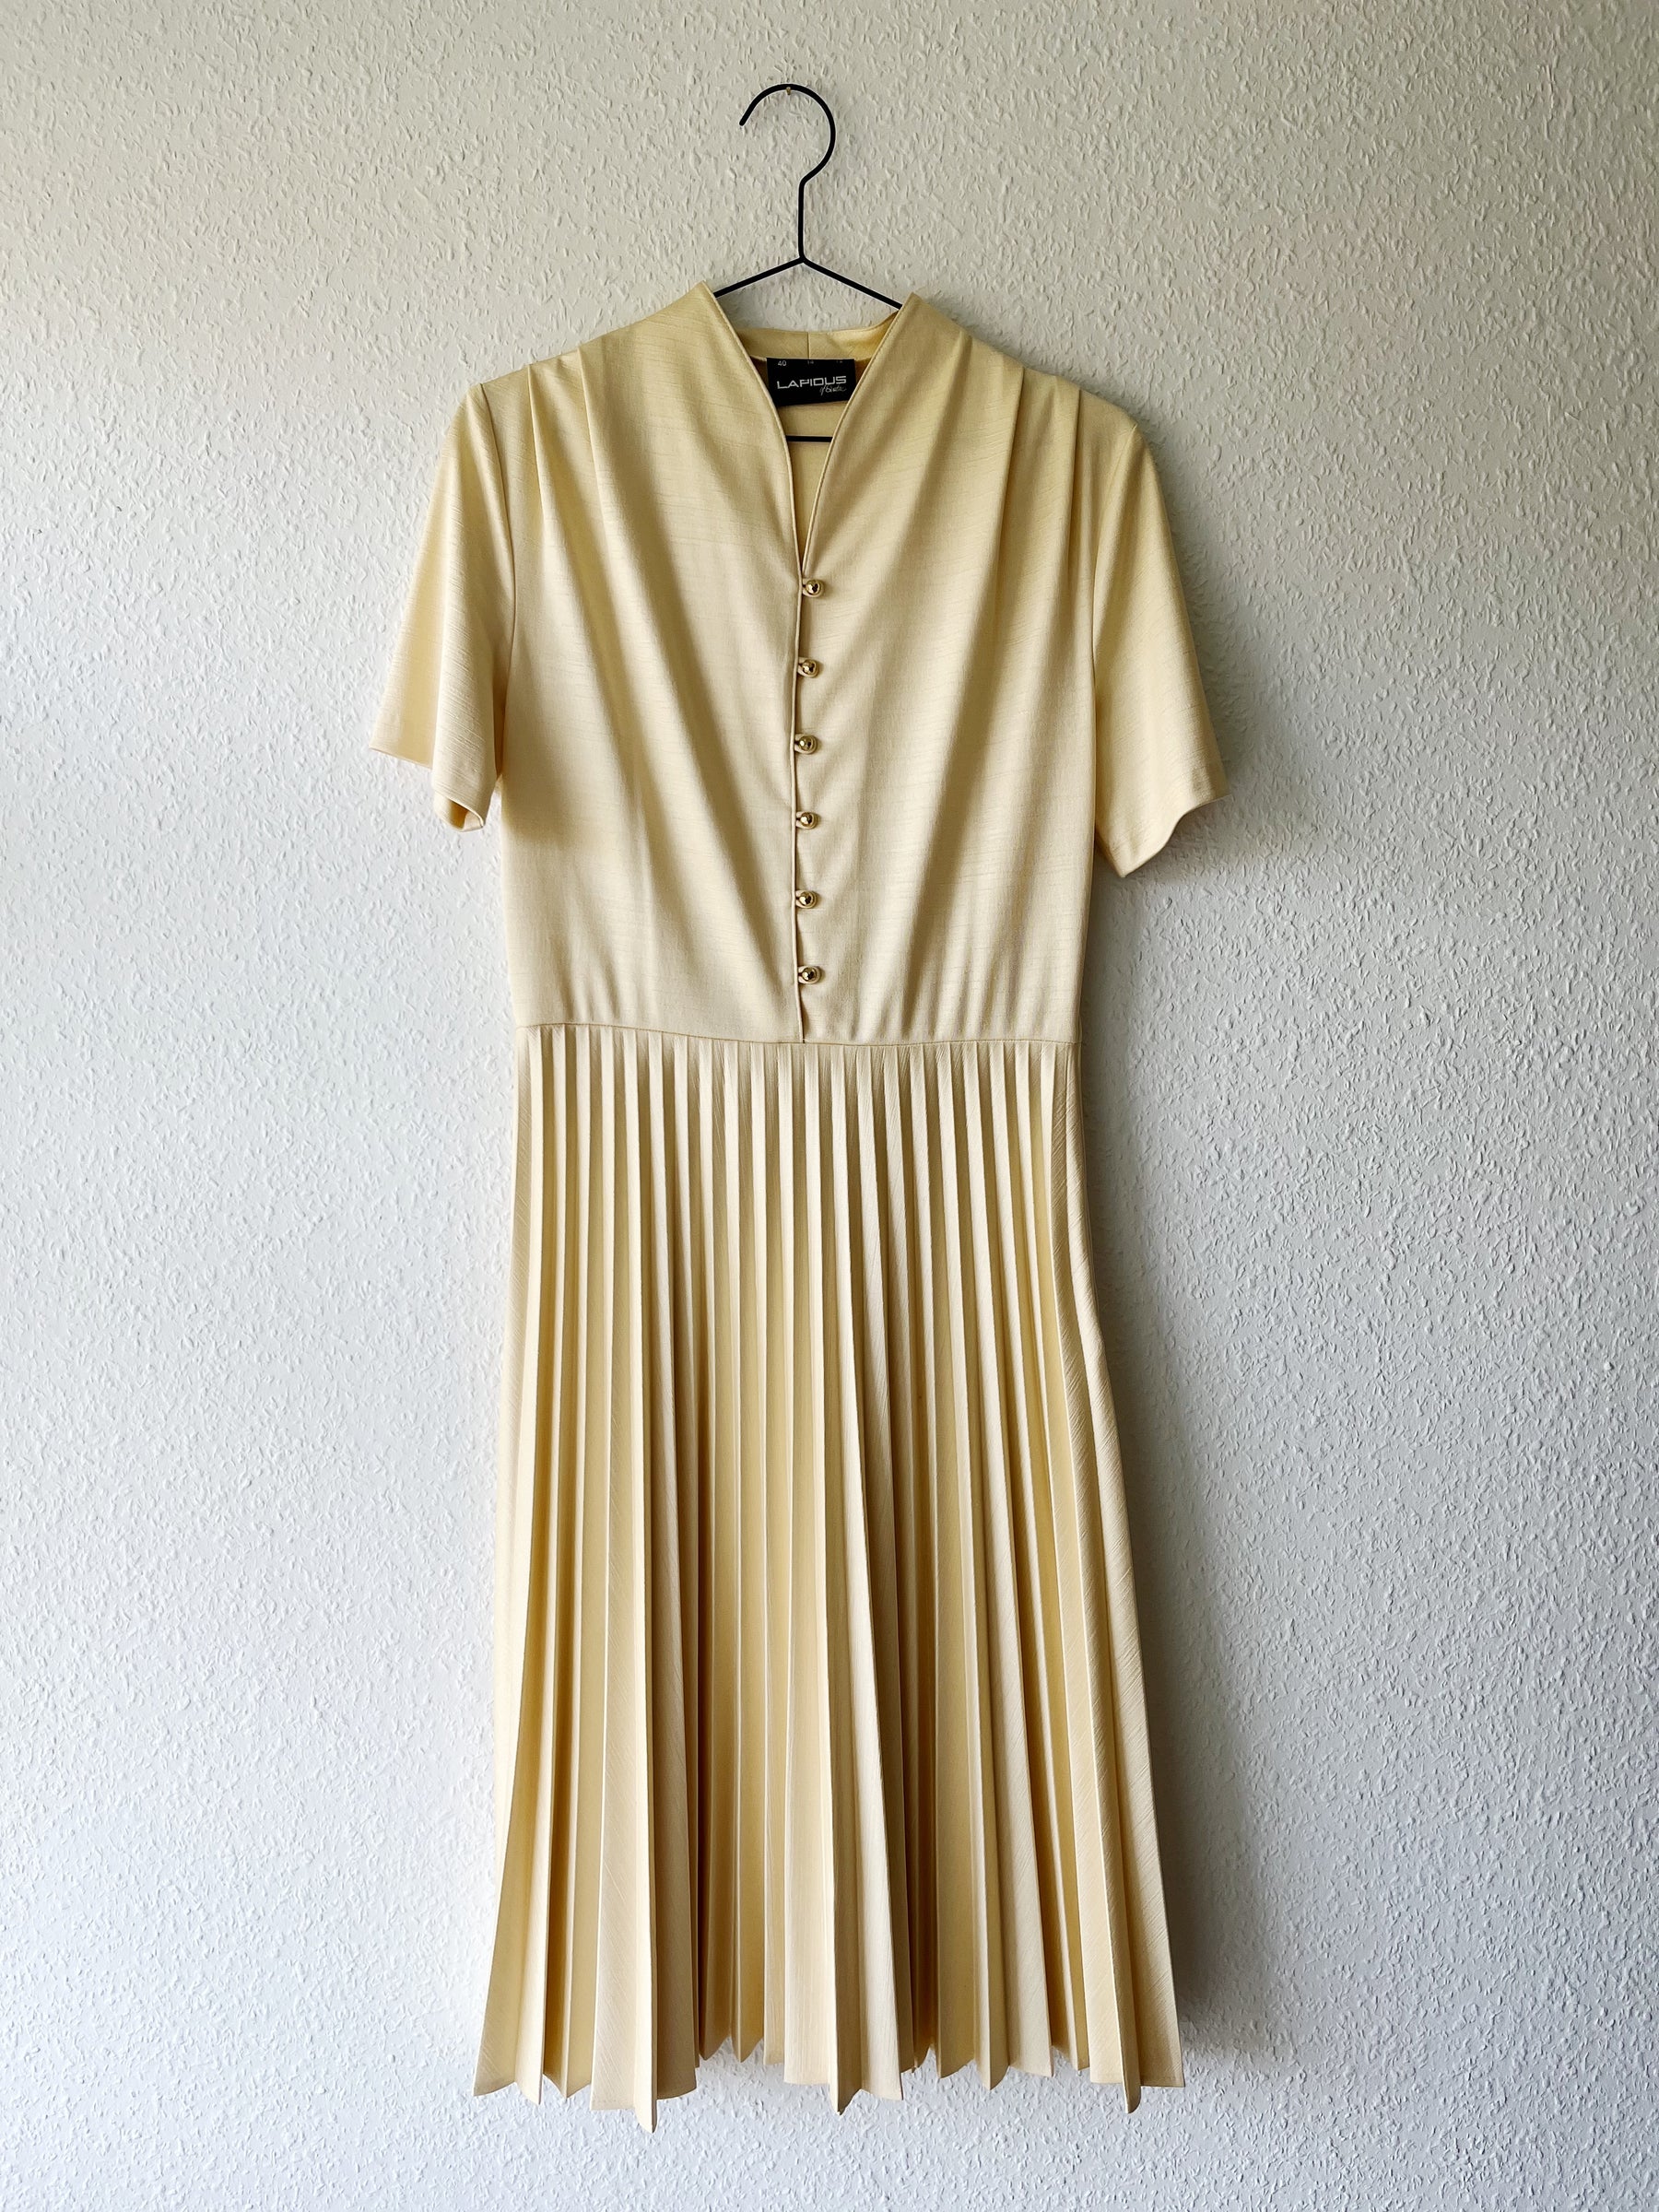 Råhvid vintage kjole